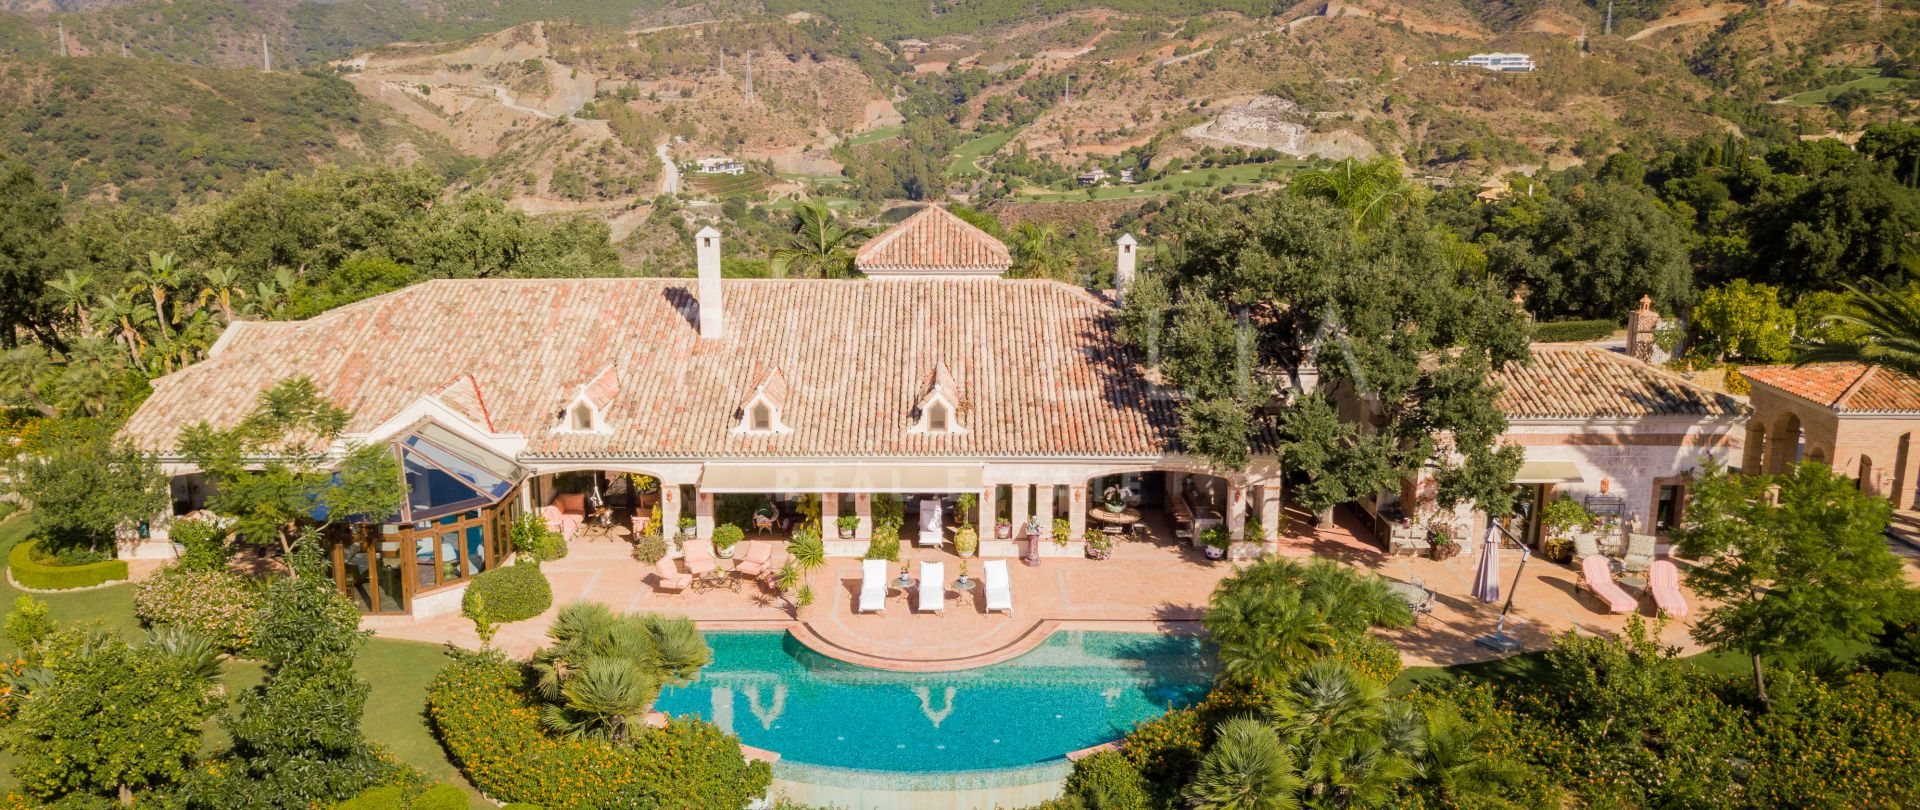 Exceptionnelle villa de luxe méditerranéenne classique et élégante, Zagaleta, Benahavis